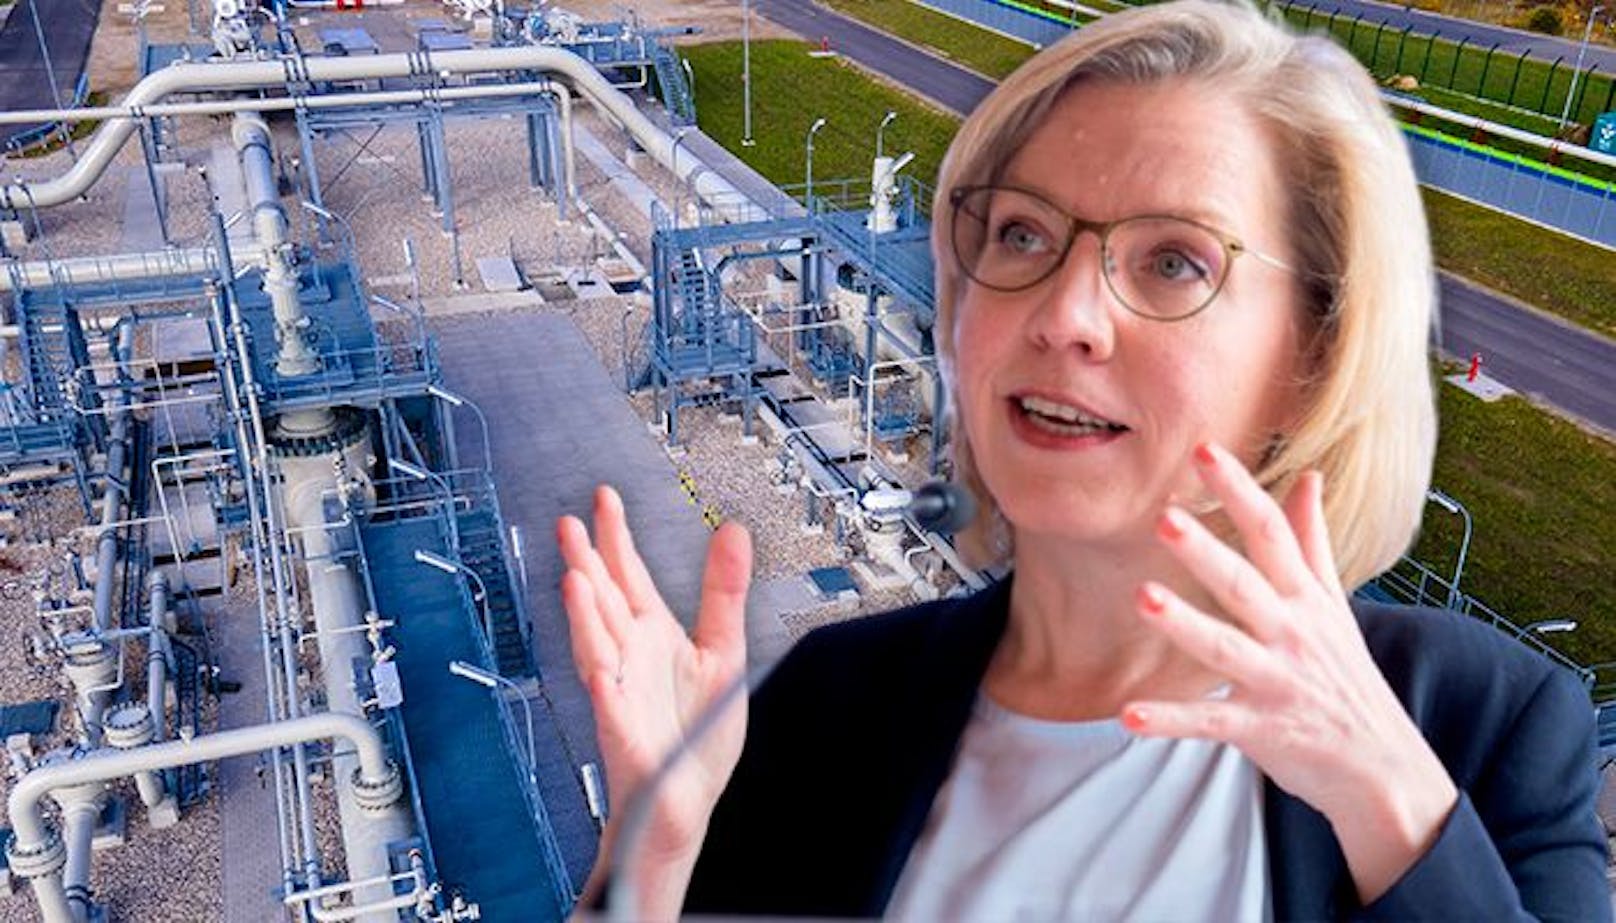 Umweltministerin Leonore Gewessler: "Wir müssen raus aus russischem Gas". Derzeit ist das aber noch nicht möglich.